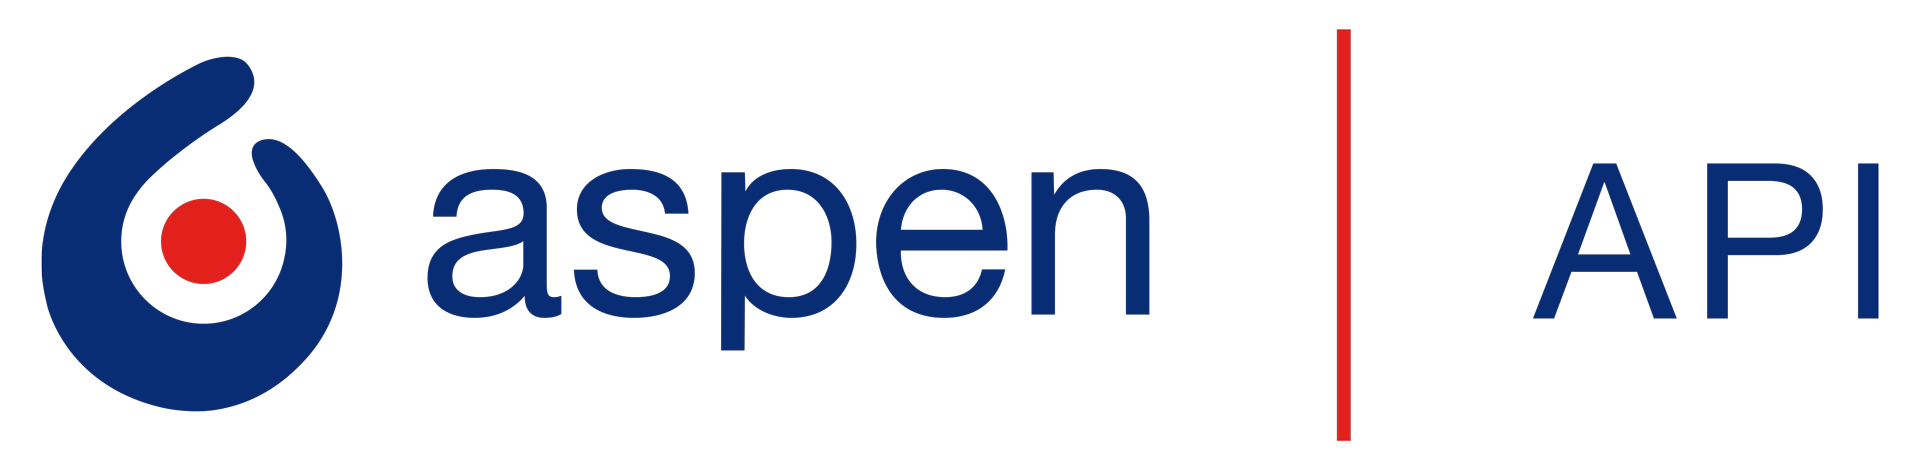 Aspen API